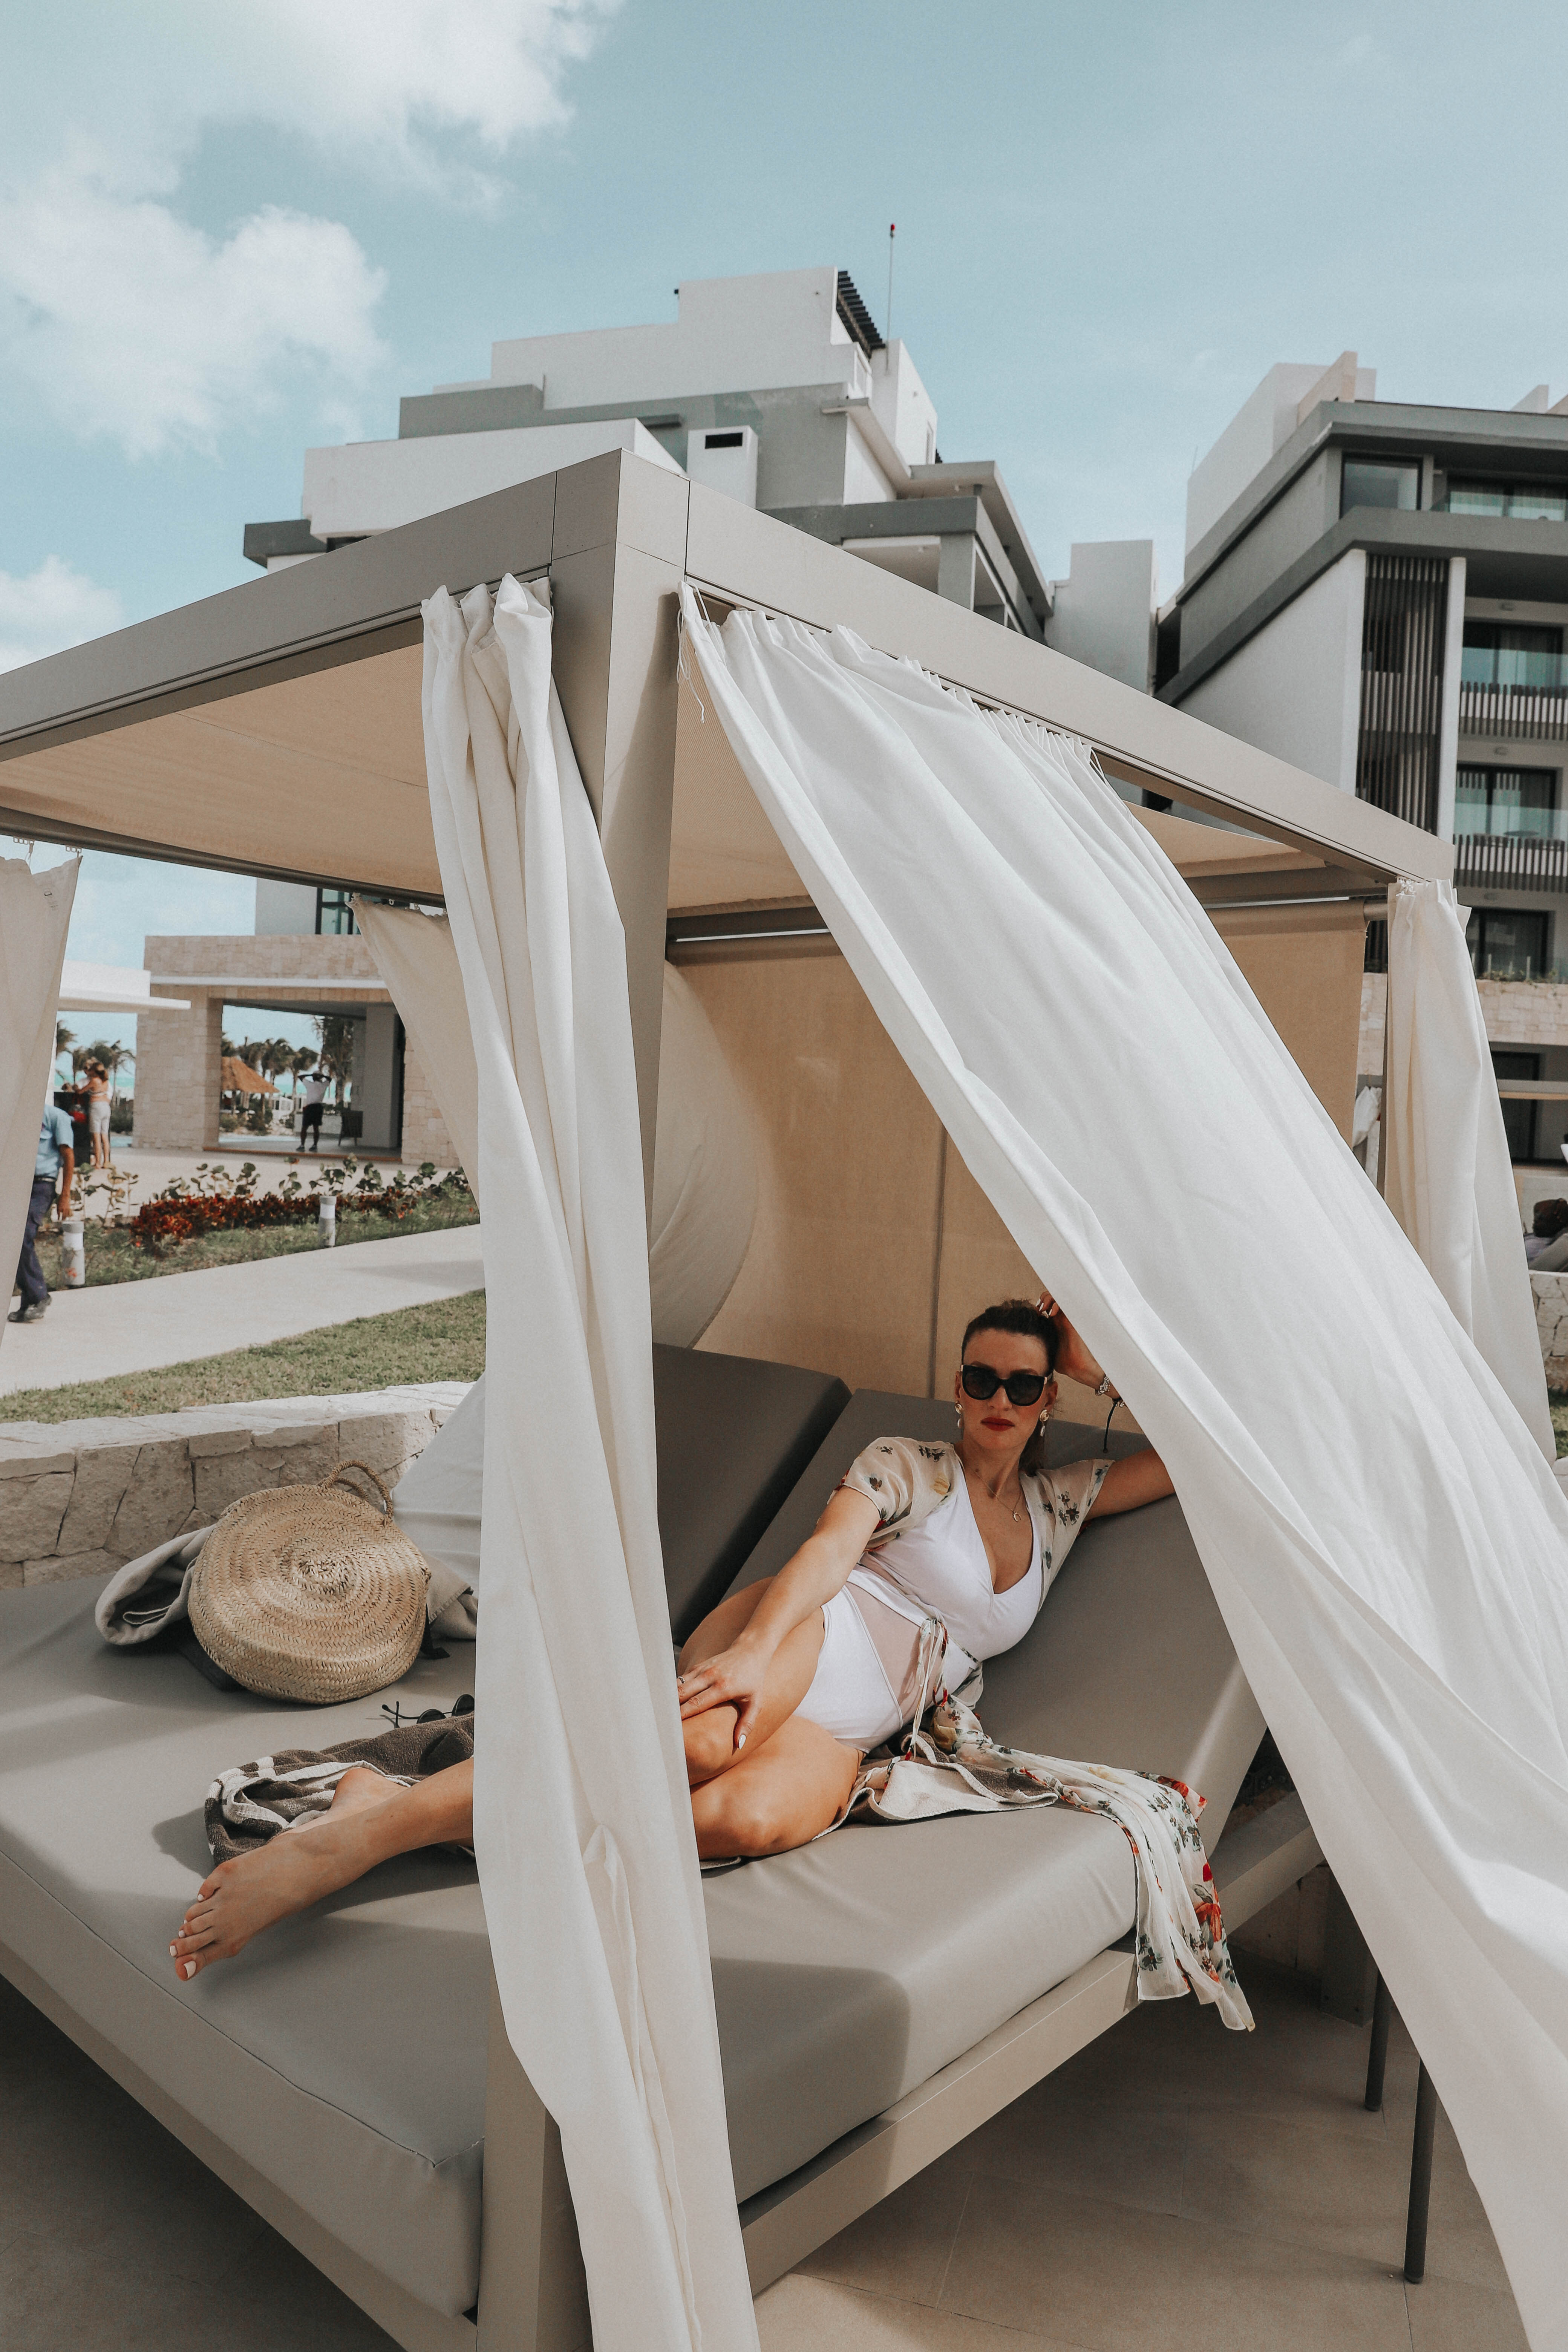 MON MODE | Fashion Blogger | Travel Blogger | Mexico | Bali Beds | Cabana 